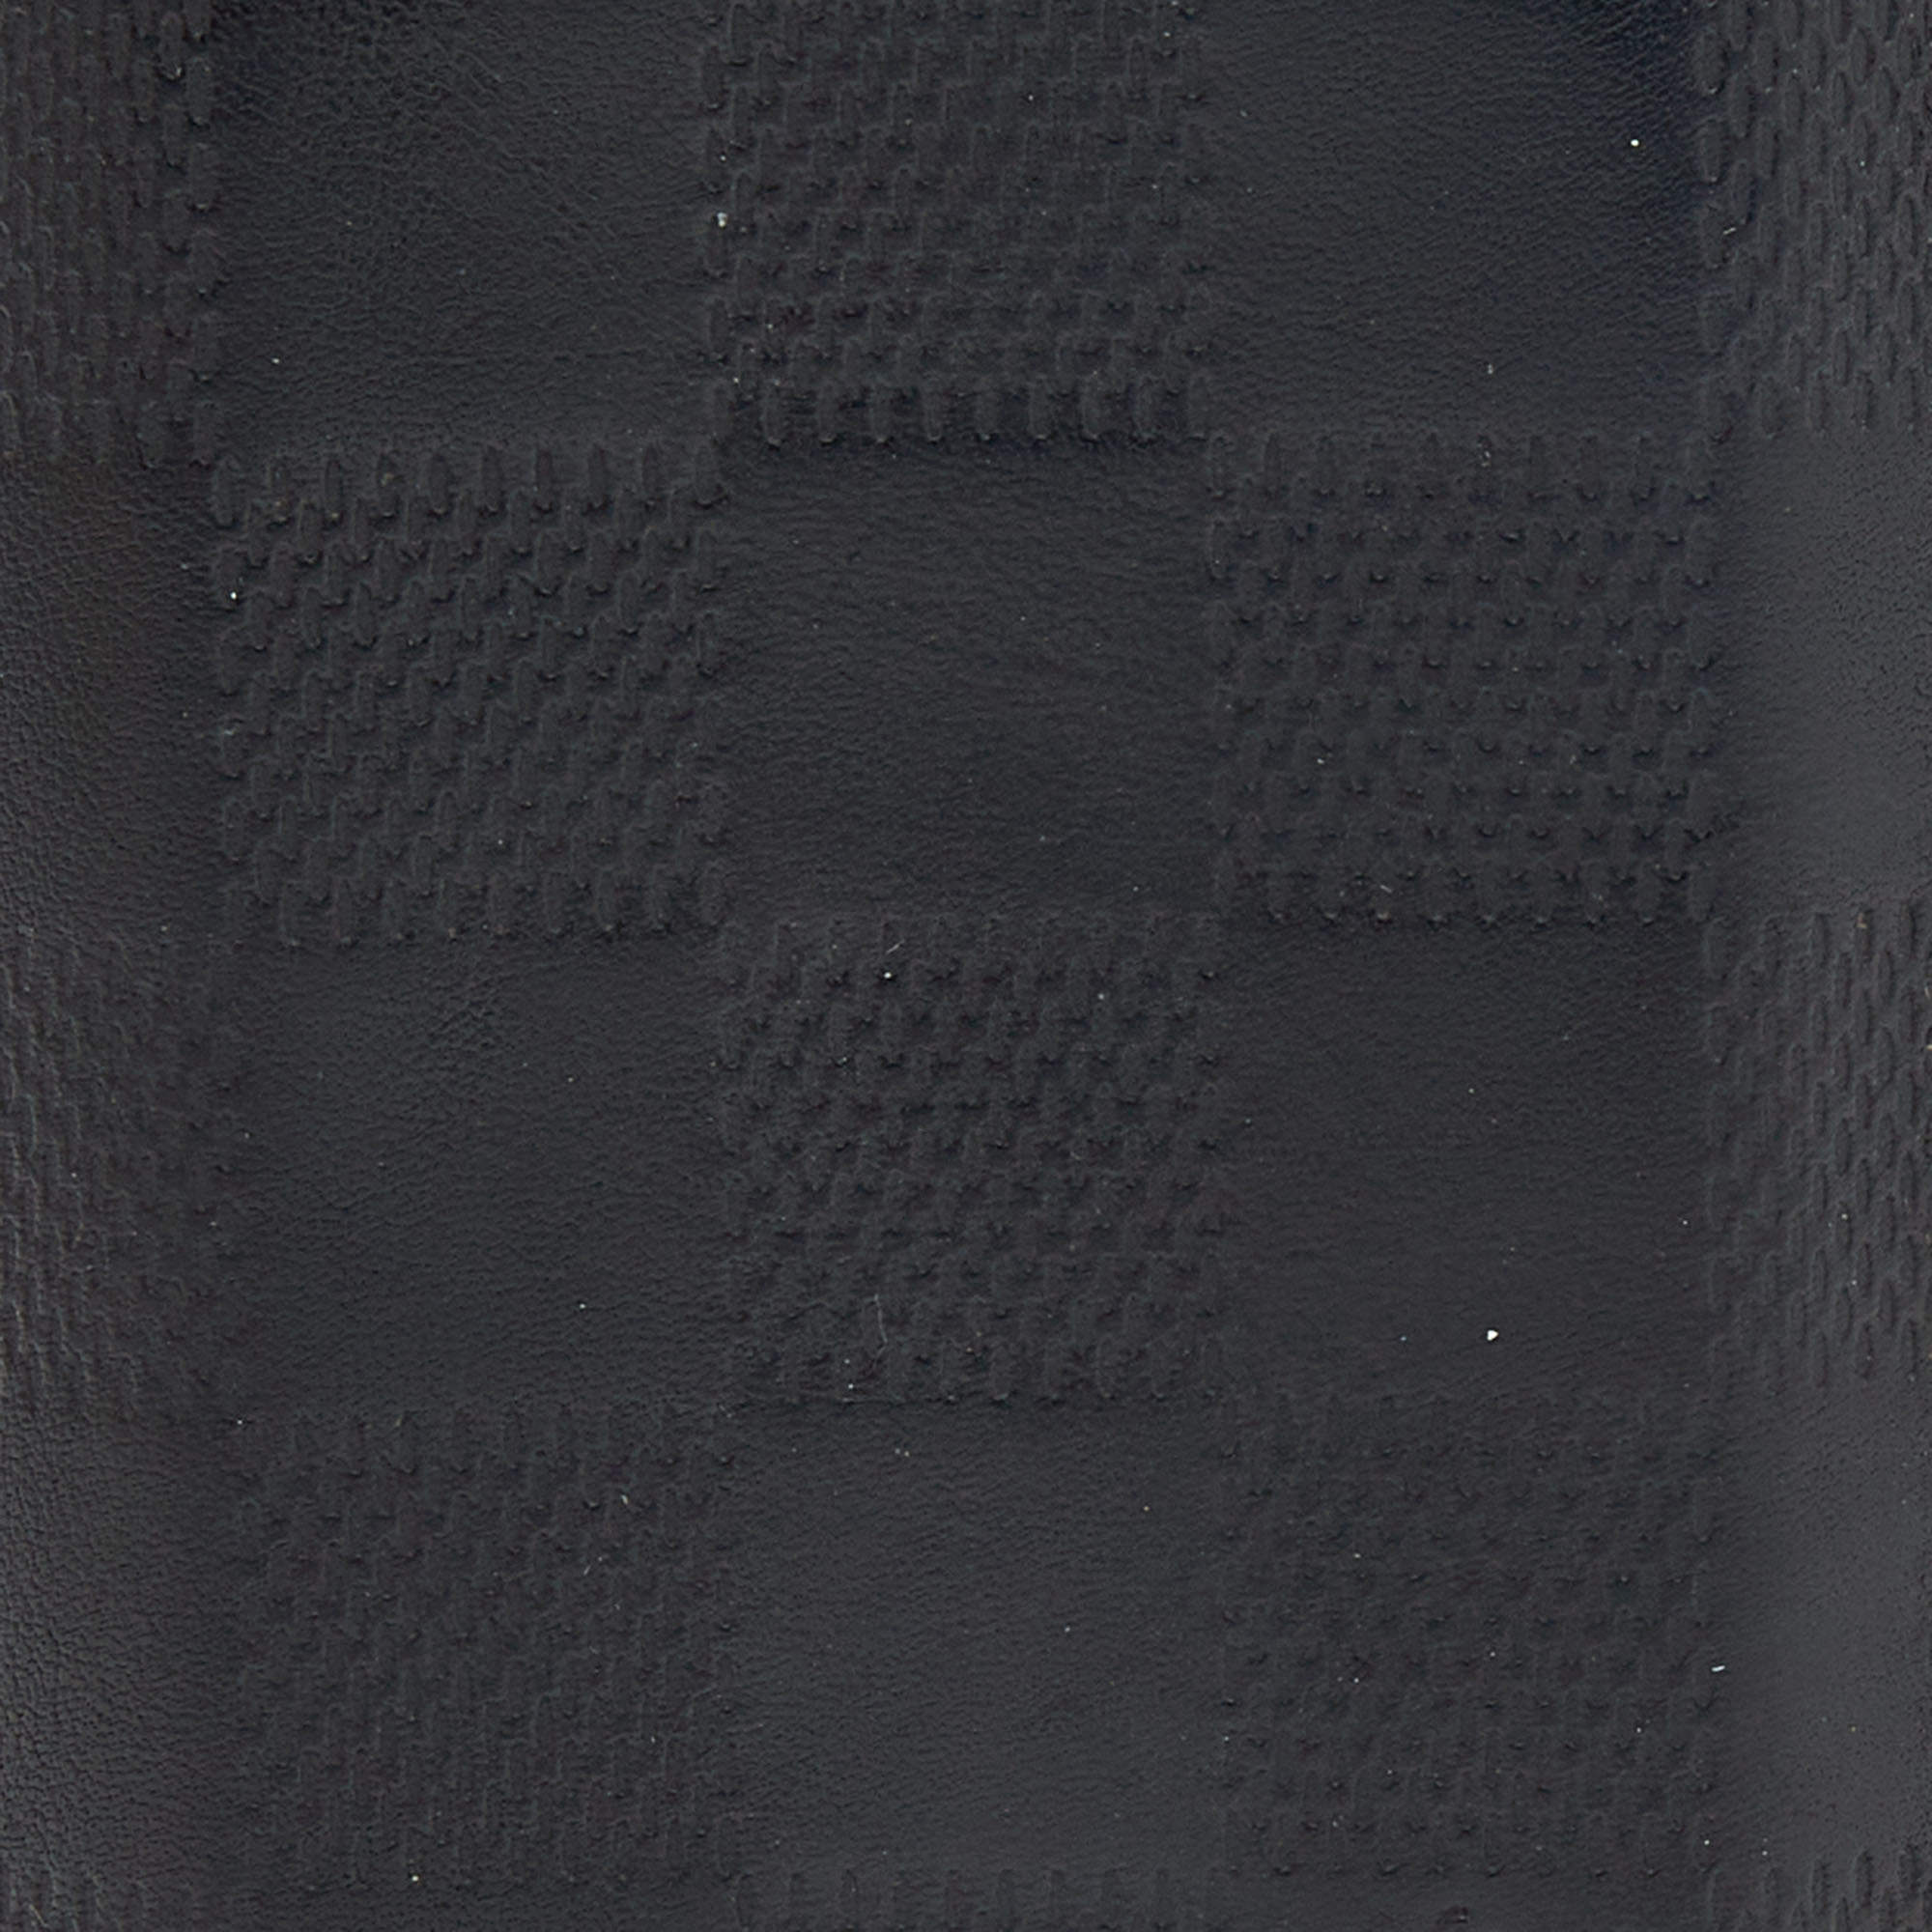 Louis Vuitton Men's Black Leather Pocket Organizer Damier Infini Onyx  N63197 – Luxuria & Co.